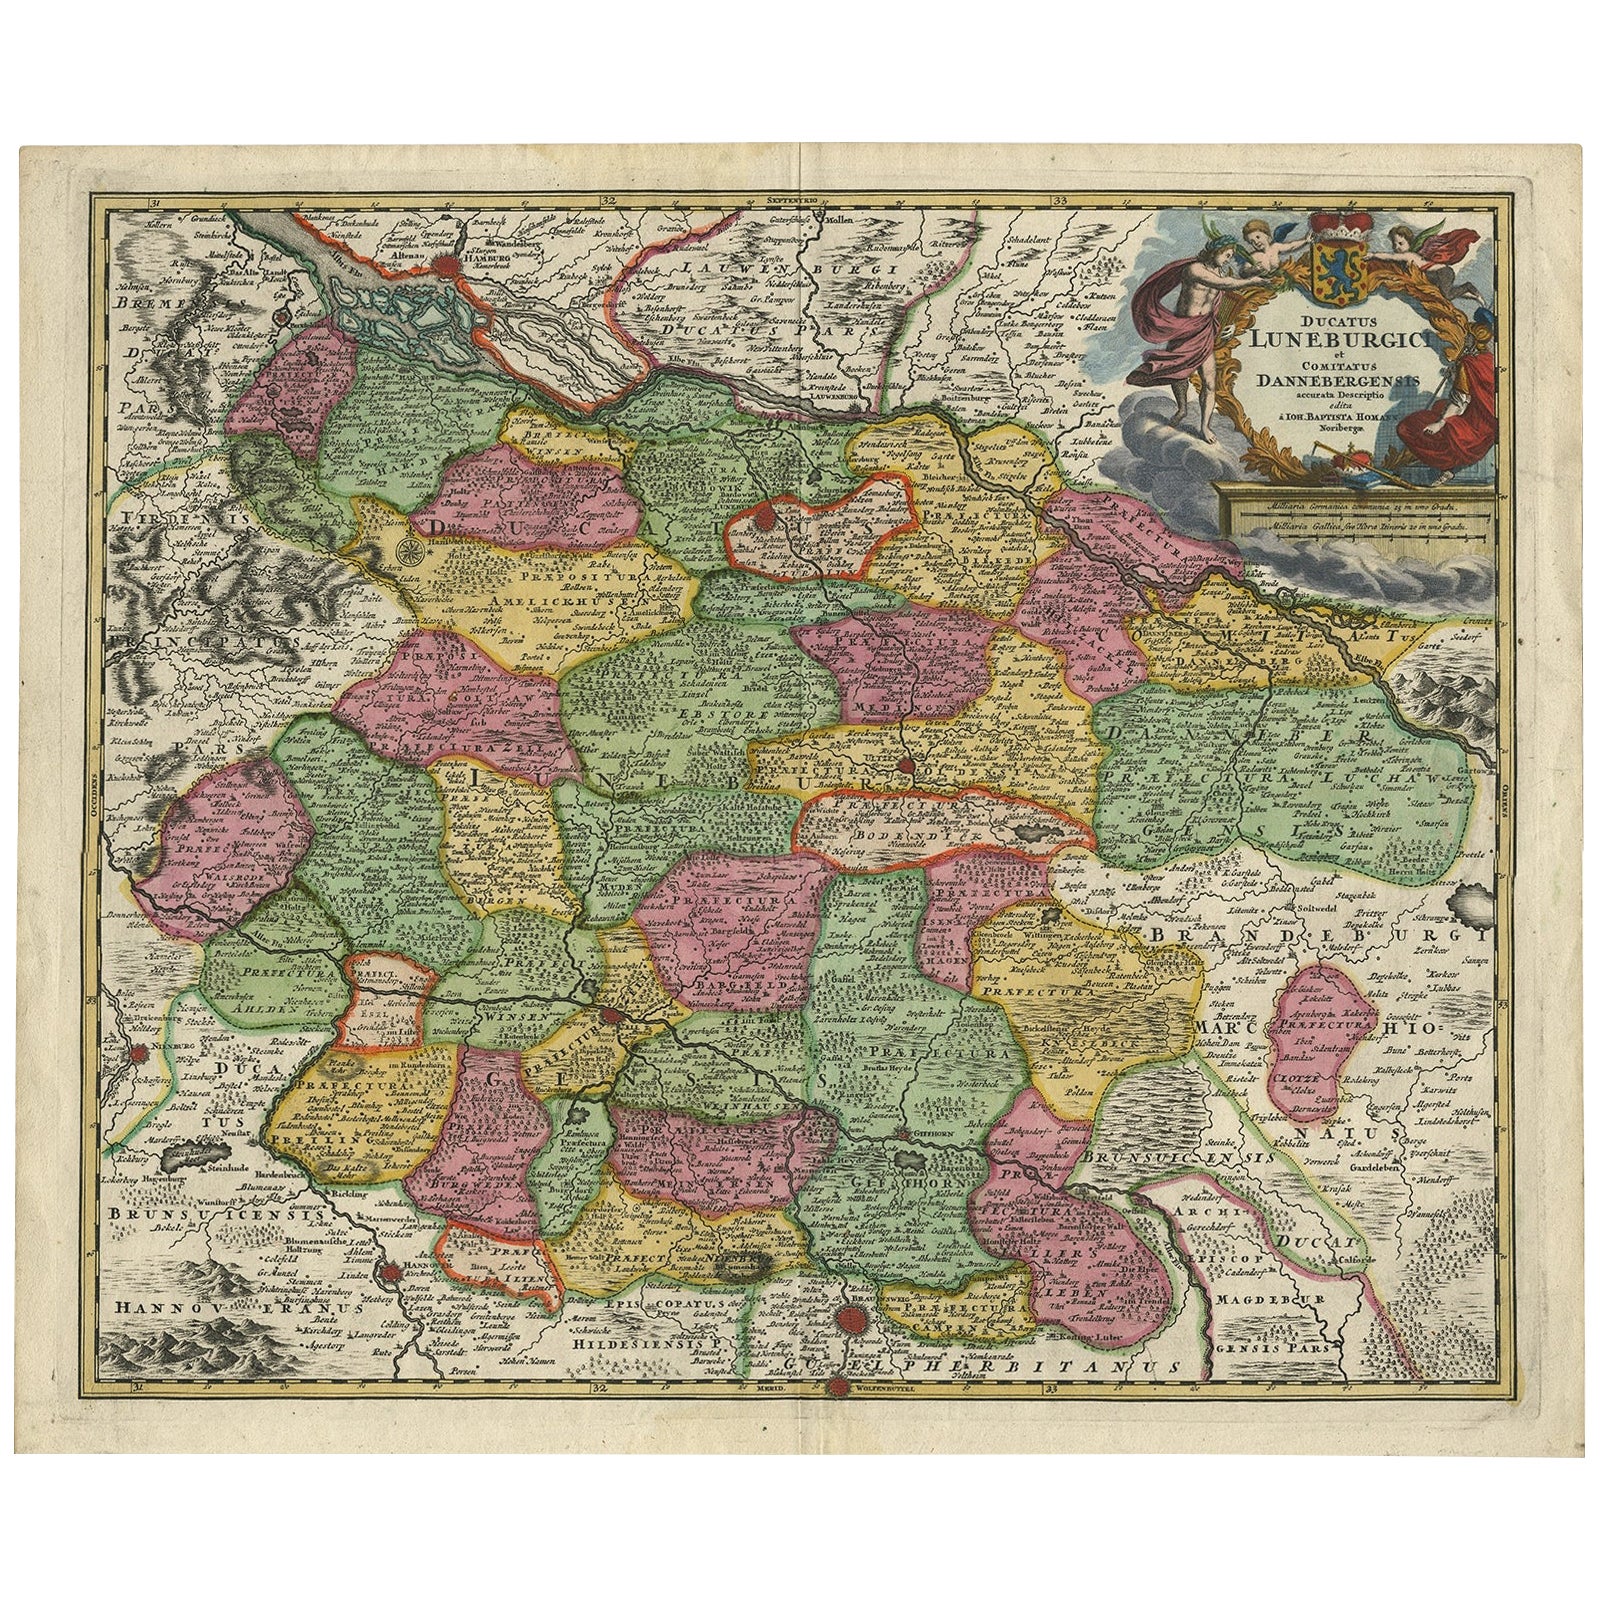 Carte régionale de l'Allemagne, incluant Hambourg, Luneberg, Hannover, Braunsweig, etc., vers 1720